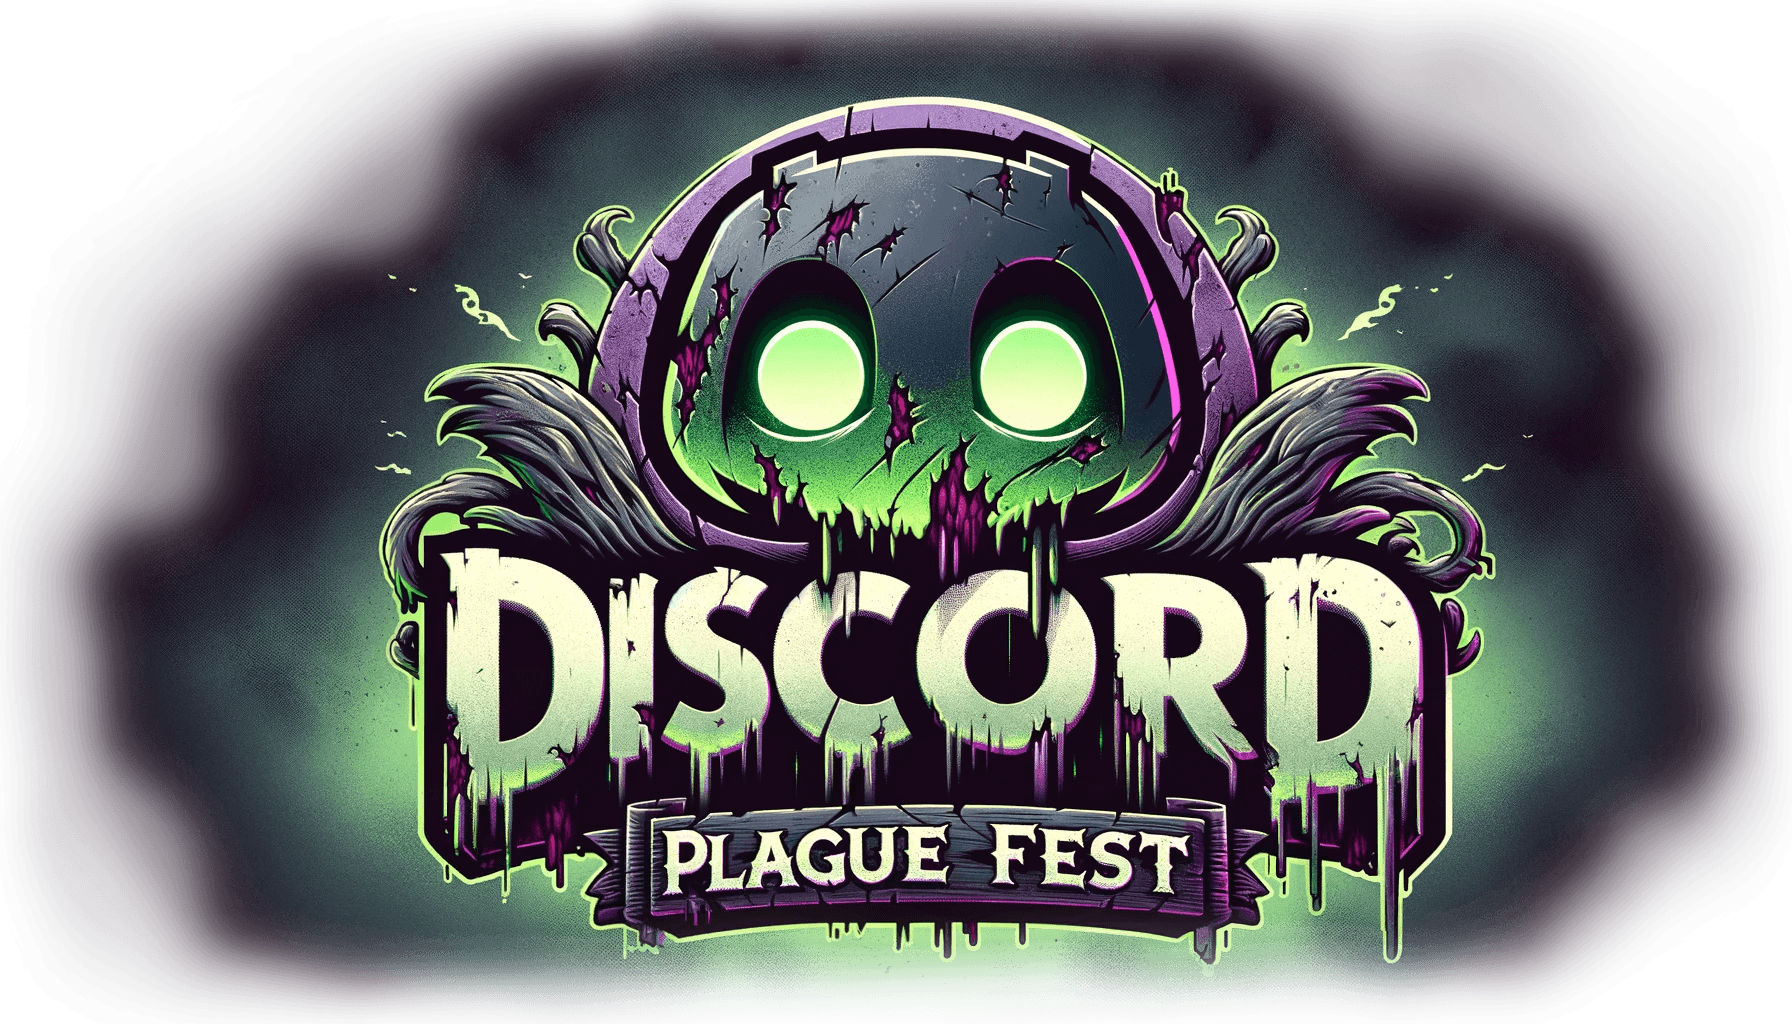 Plague Fest